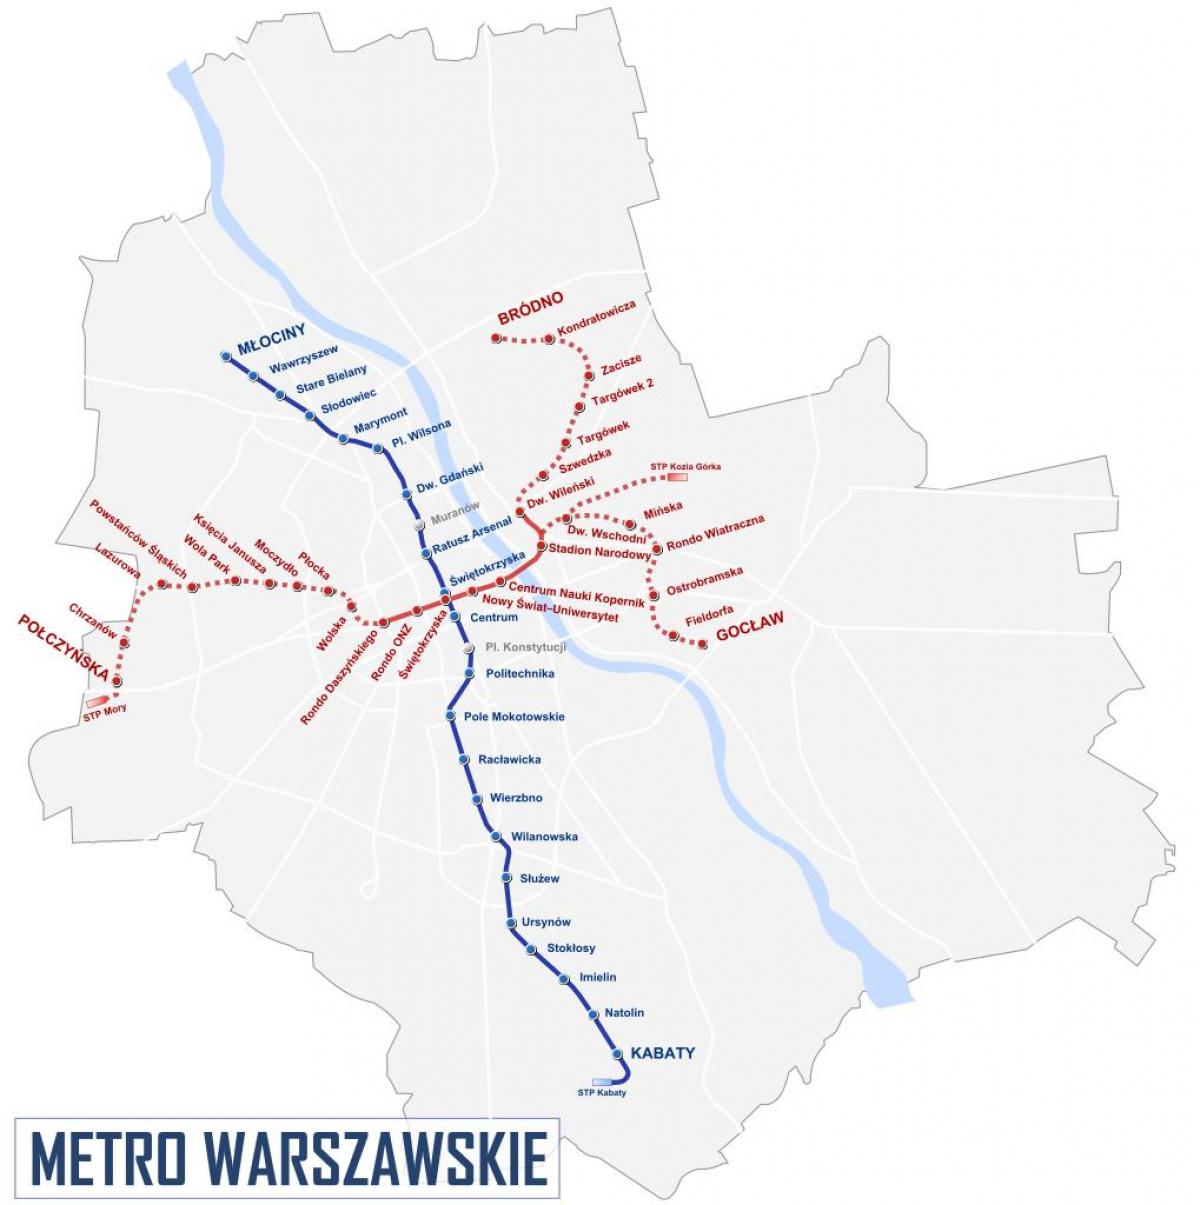 Kort over Warszawa metro 2016